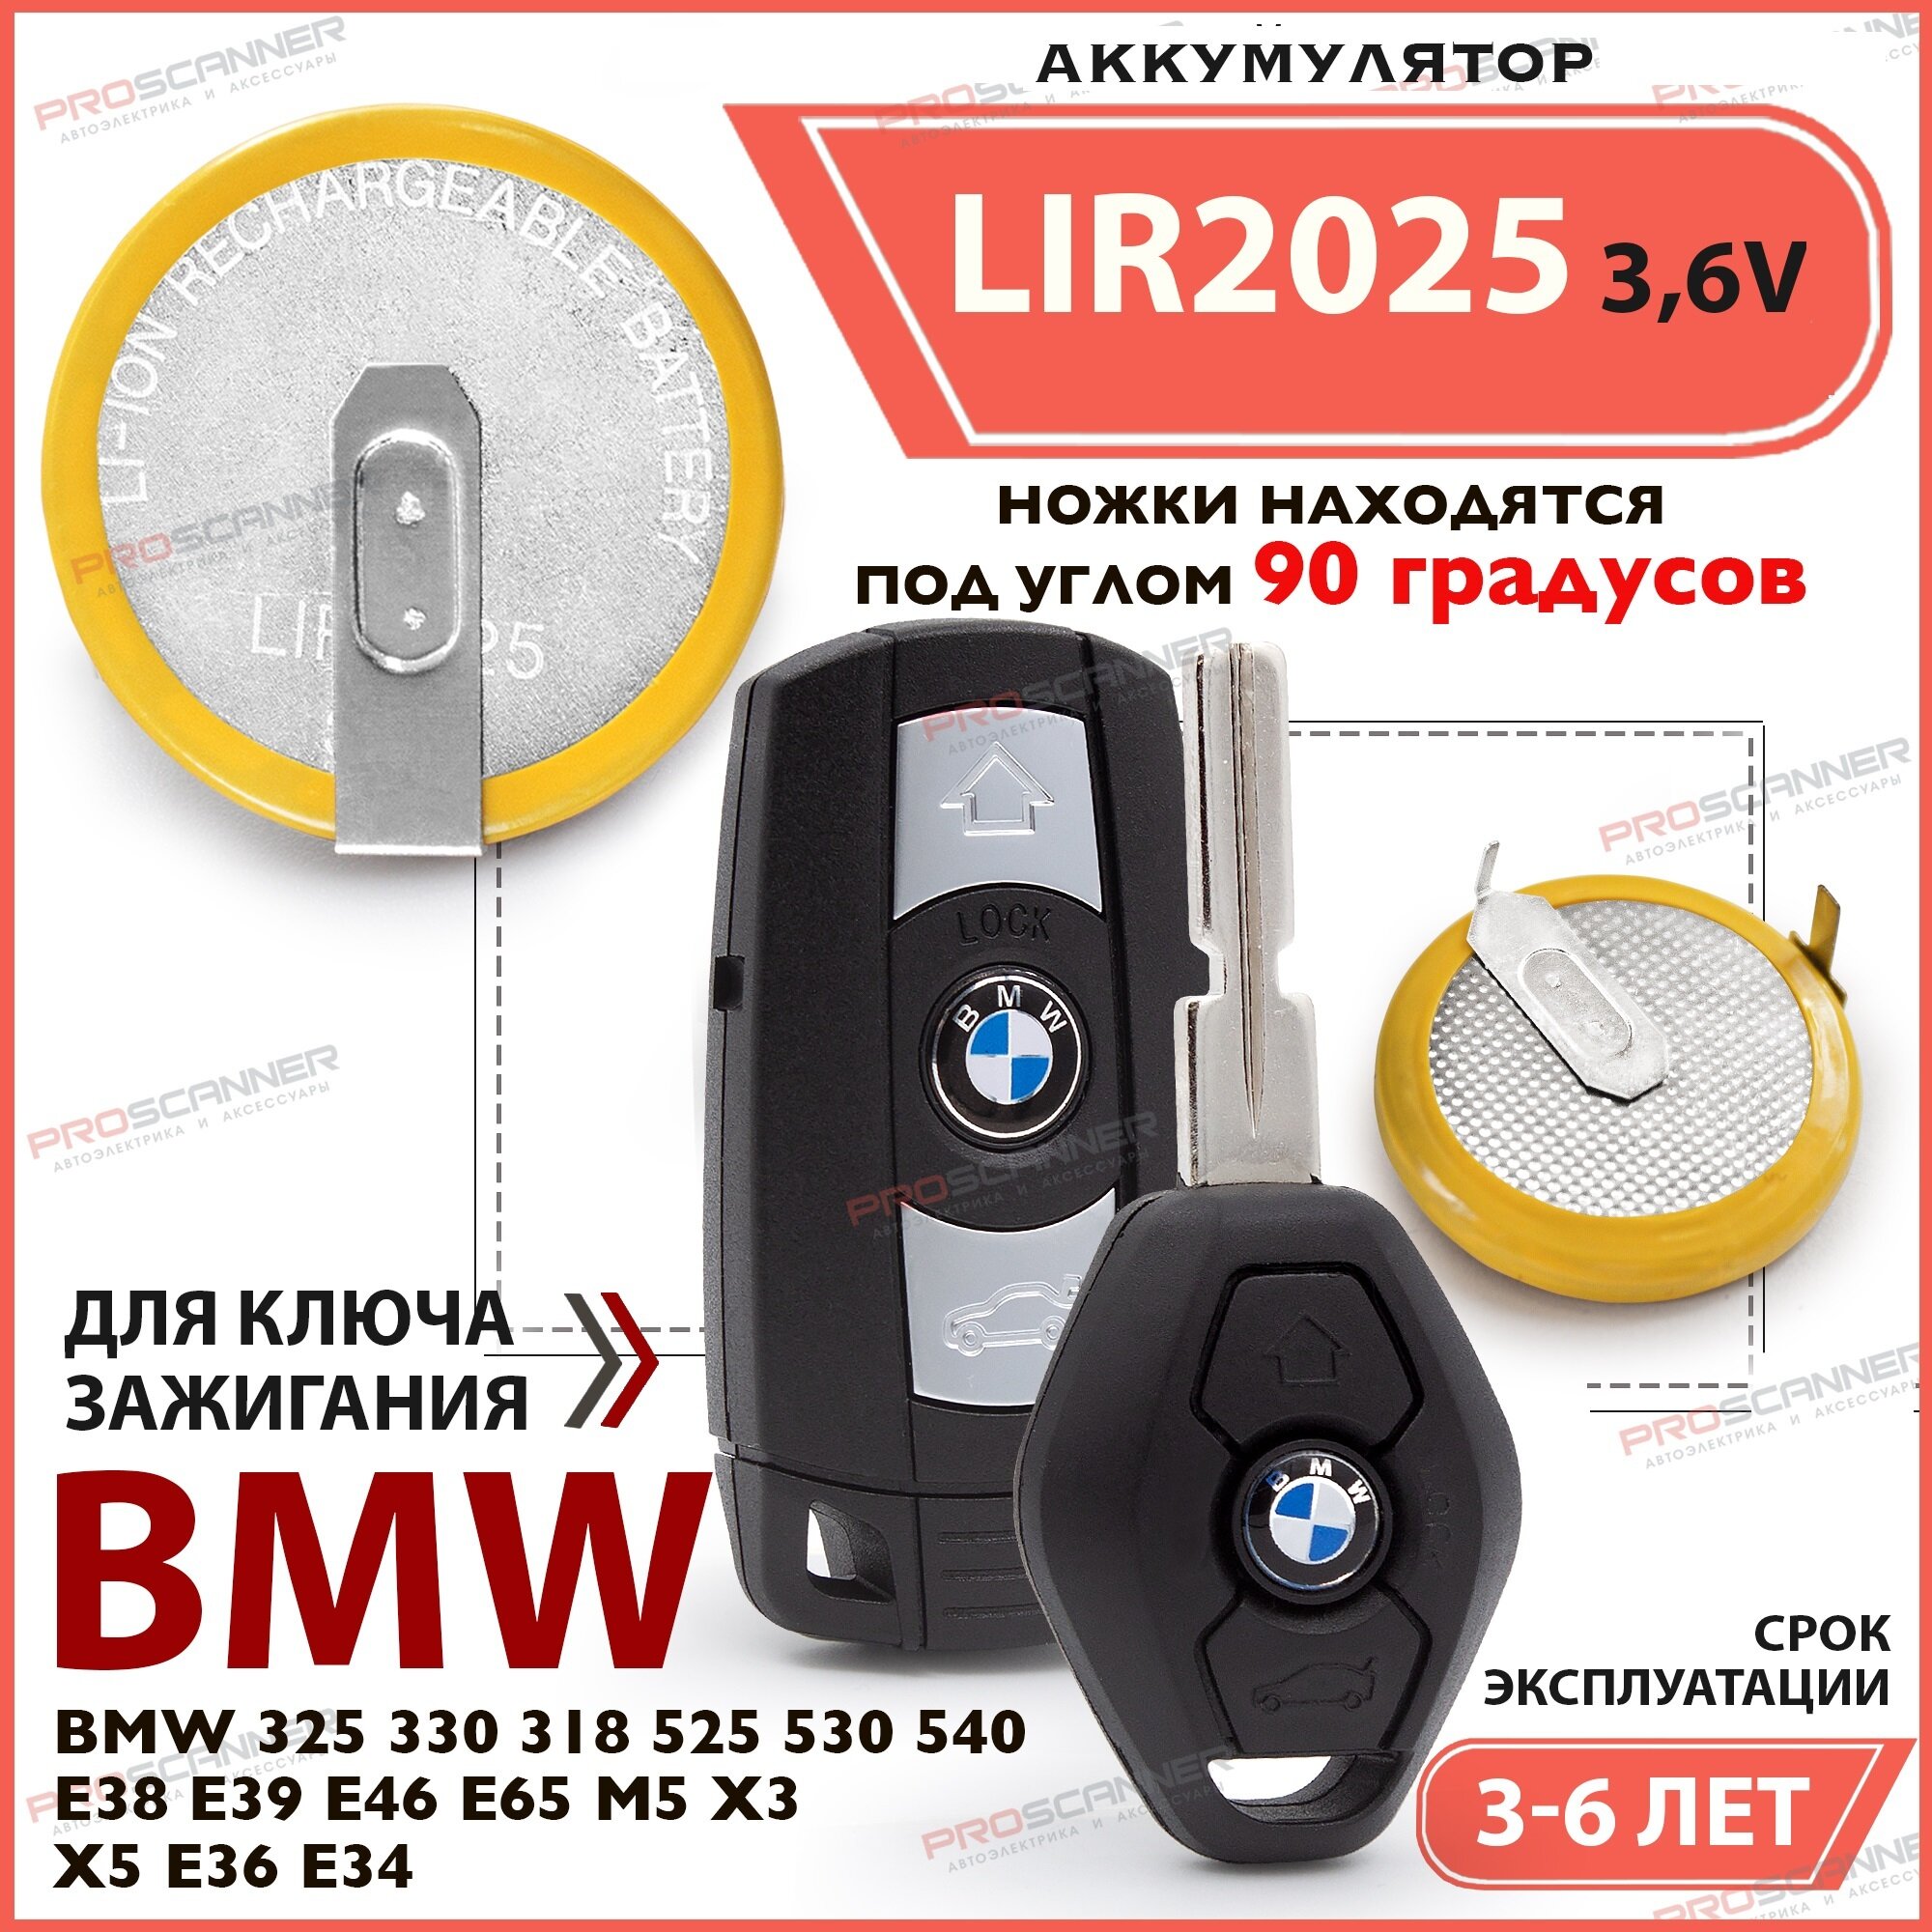 Батарейка аккумулятор BMW LIR2025 (Li-ion) 3,6V 30 мА для ключей зажигания BMW